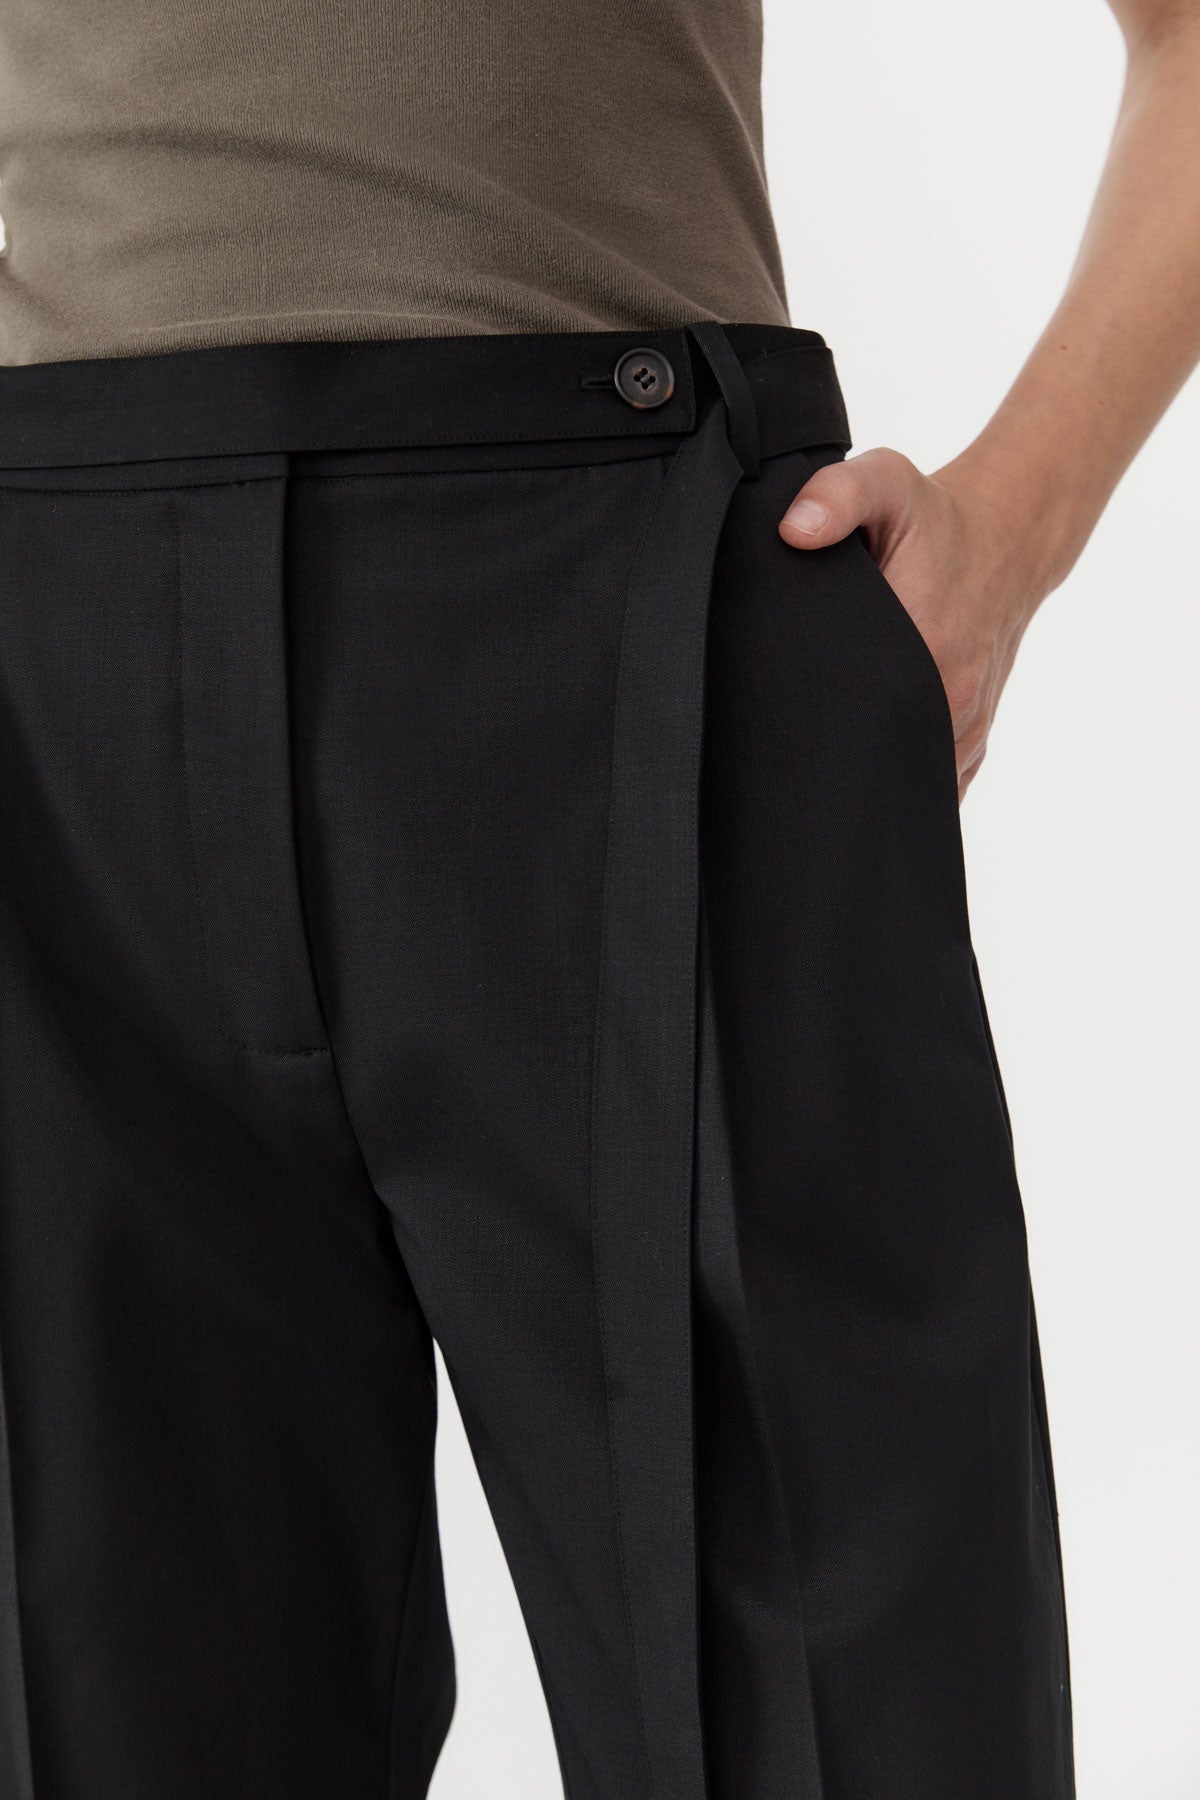 Belted Pants - Black